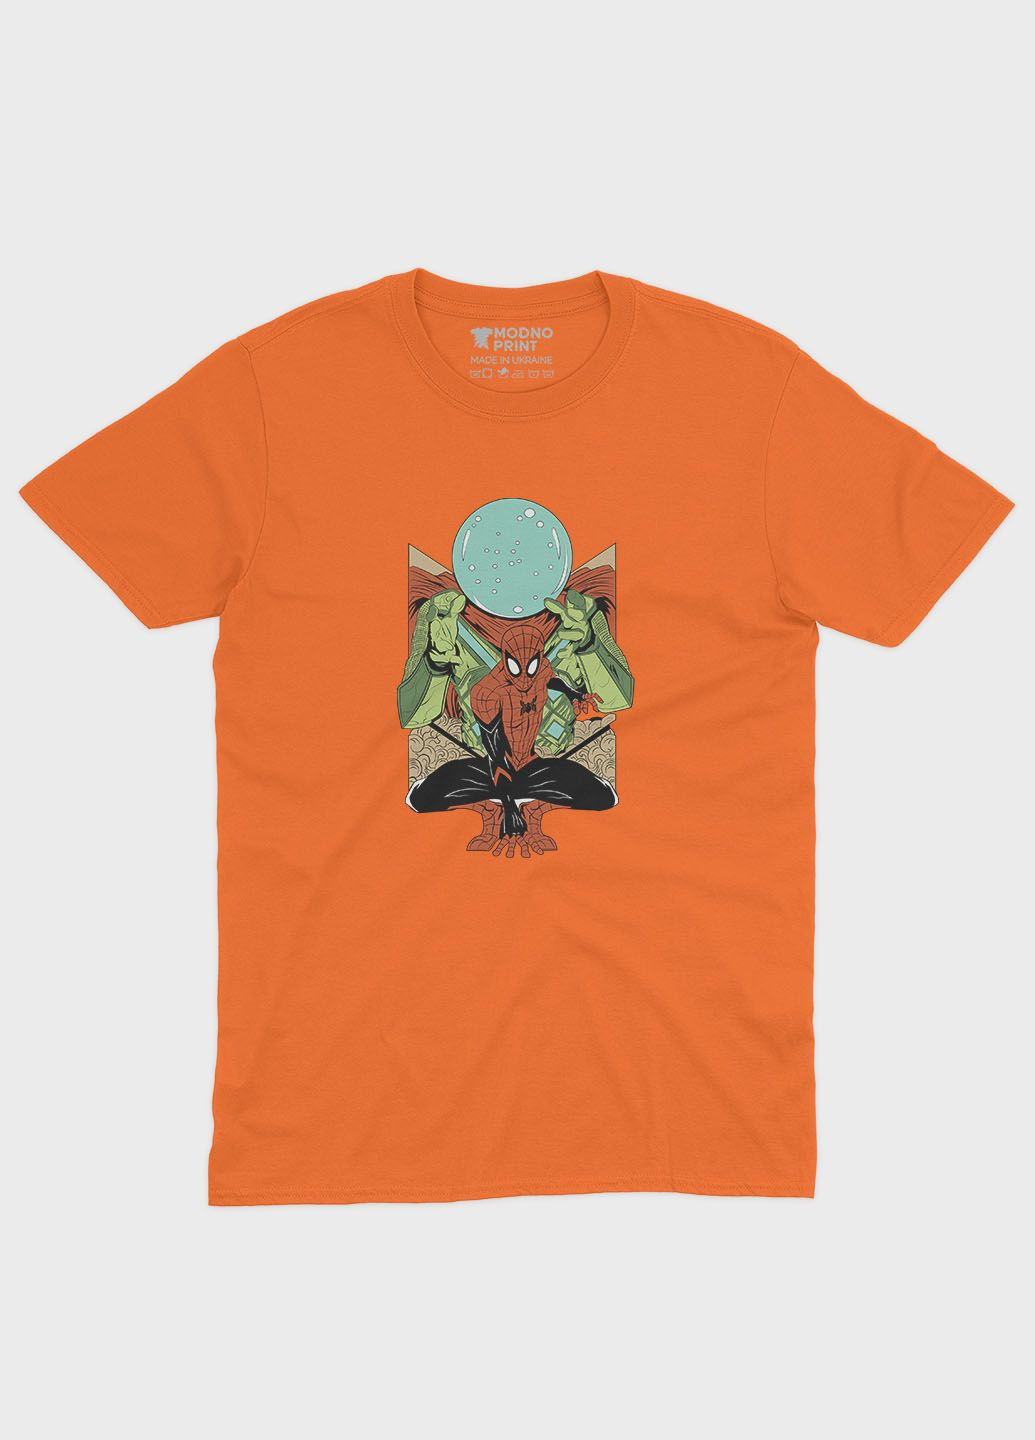 Помаранчева демісезонна футболка для хлопчика з принтом супергероя - людина-павук (ts001-1-ora-006-014-020-b) Modno